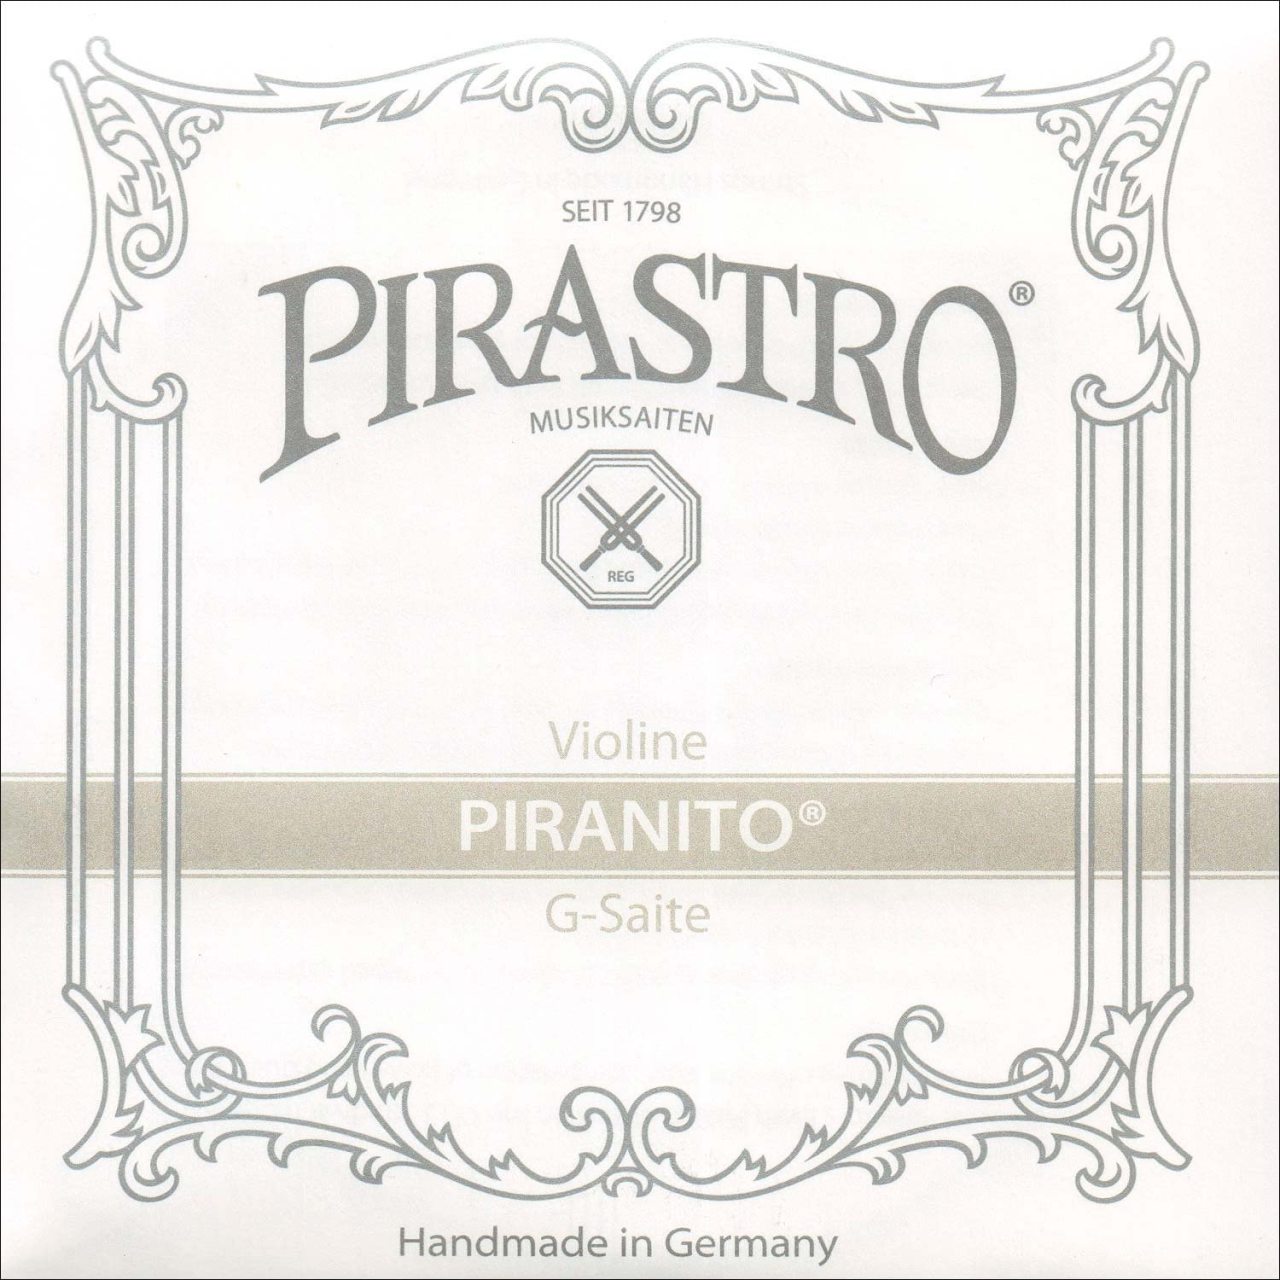 Pirastro Piranito Violin String Left (G)